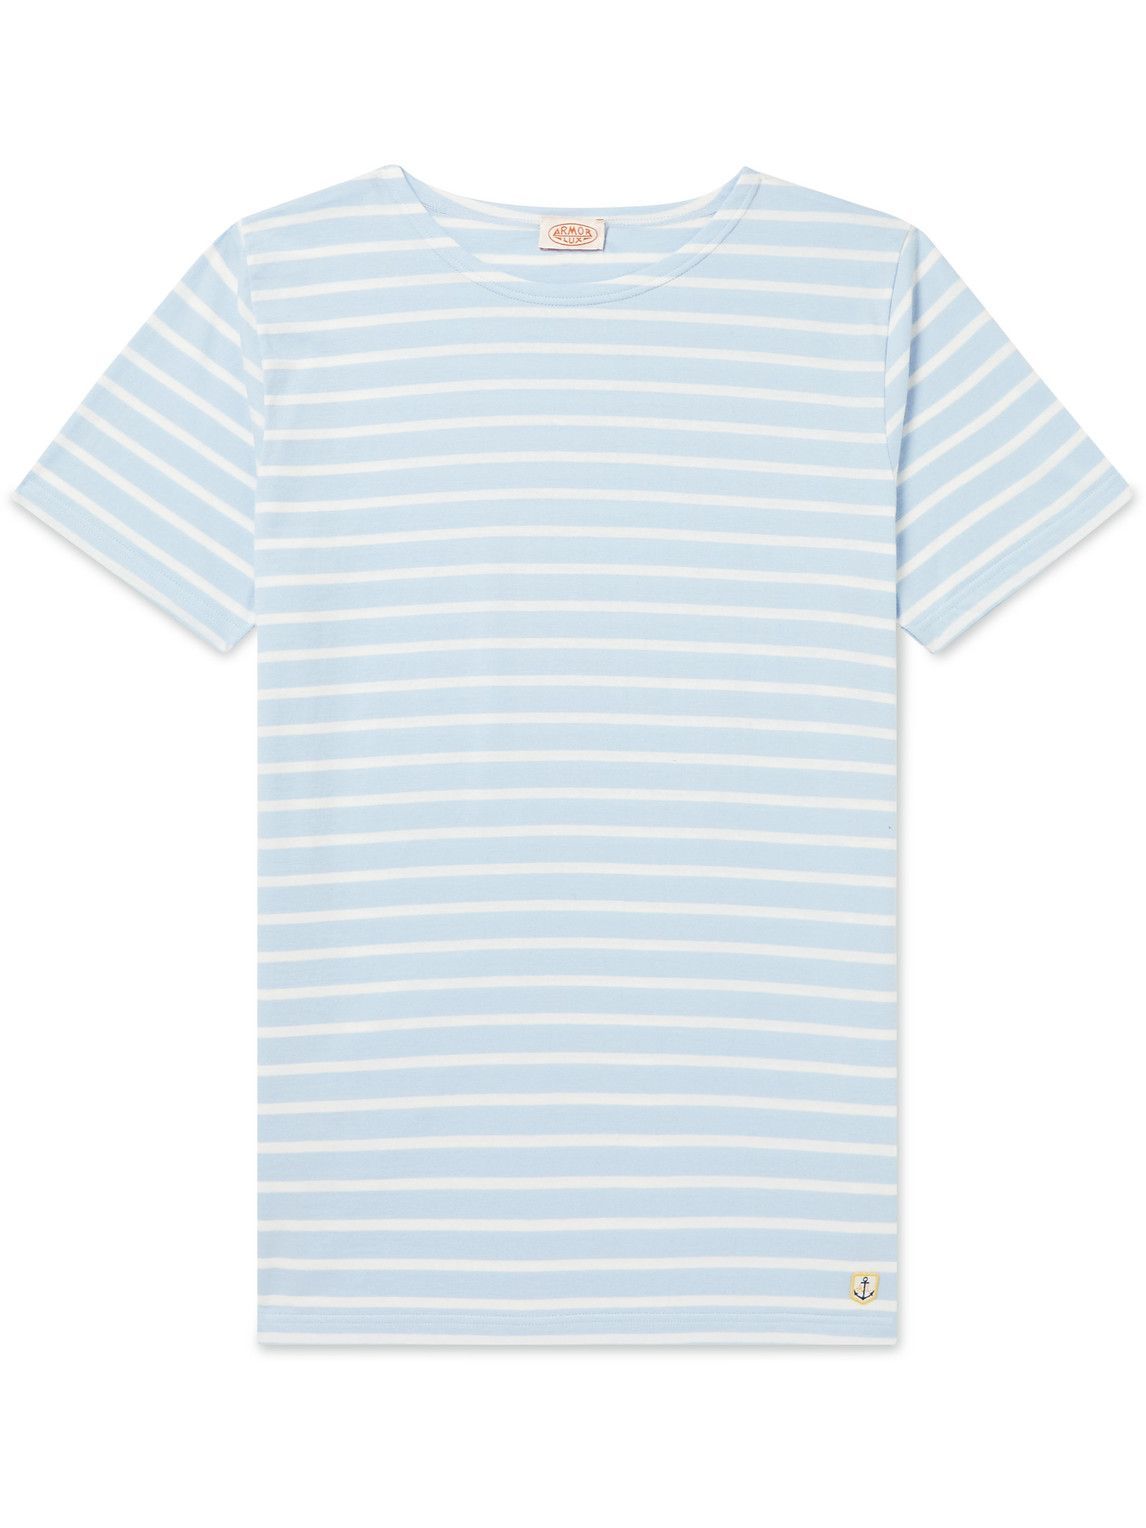 Armor Lux - Logo-Appliquéd Striped Cotton-Jersey T-Shirt - Blue Armor Lux